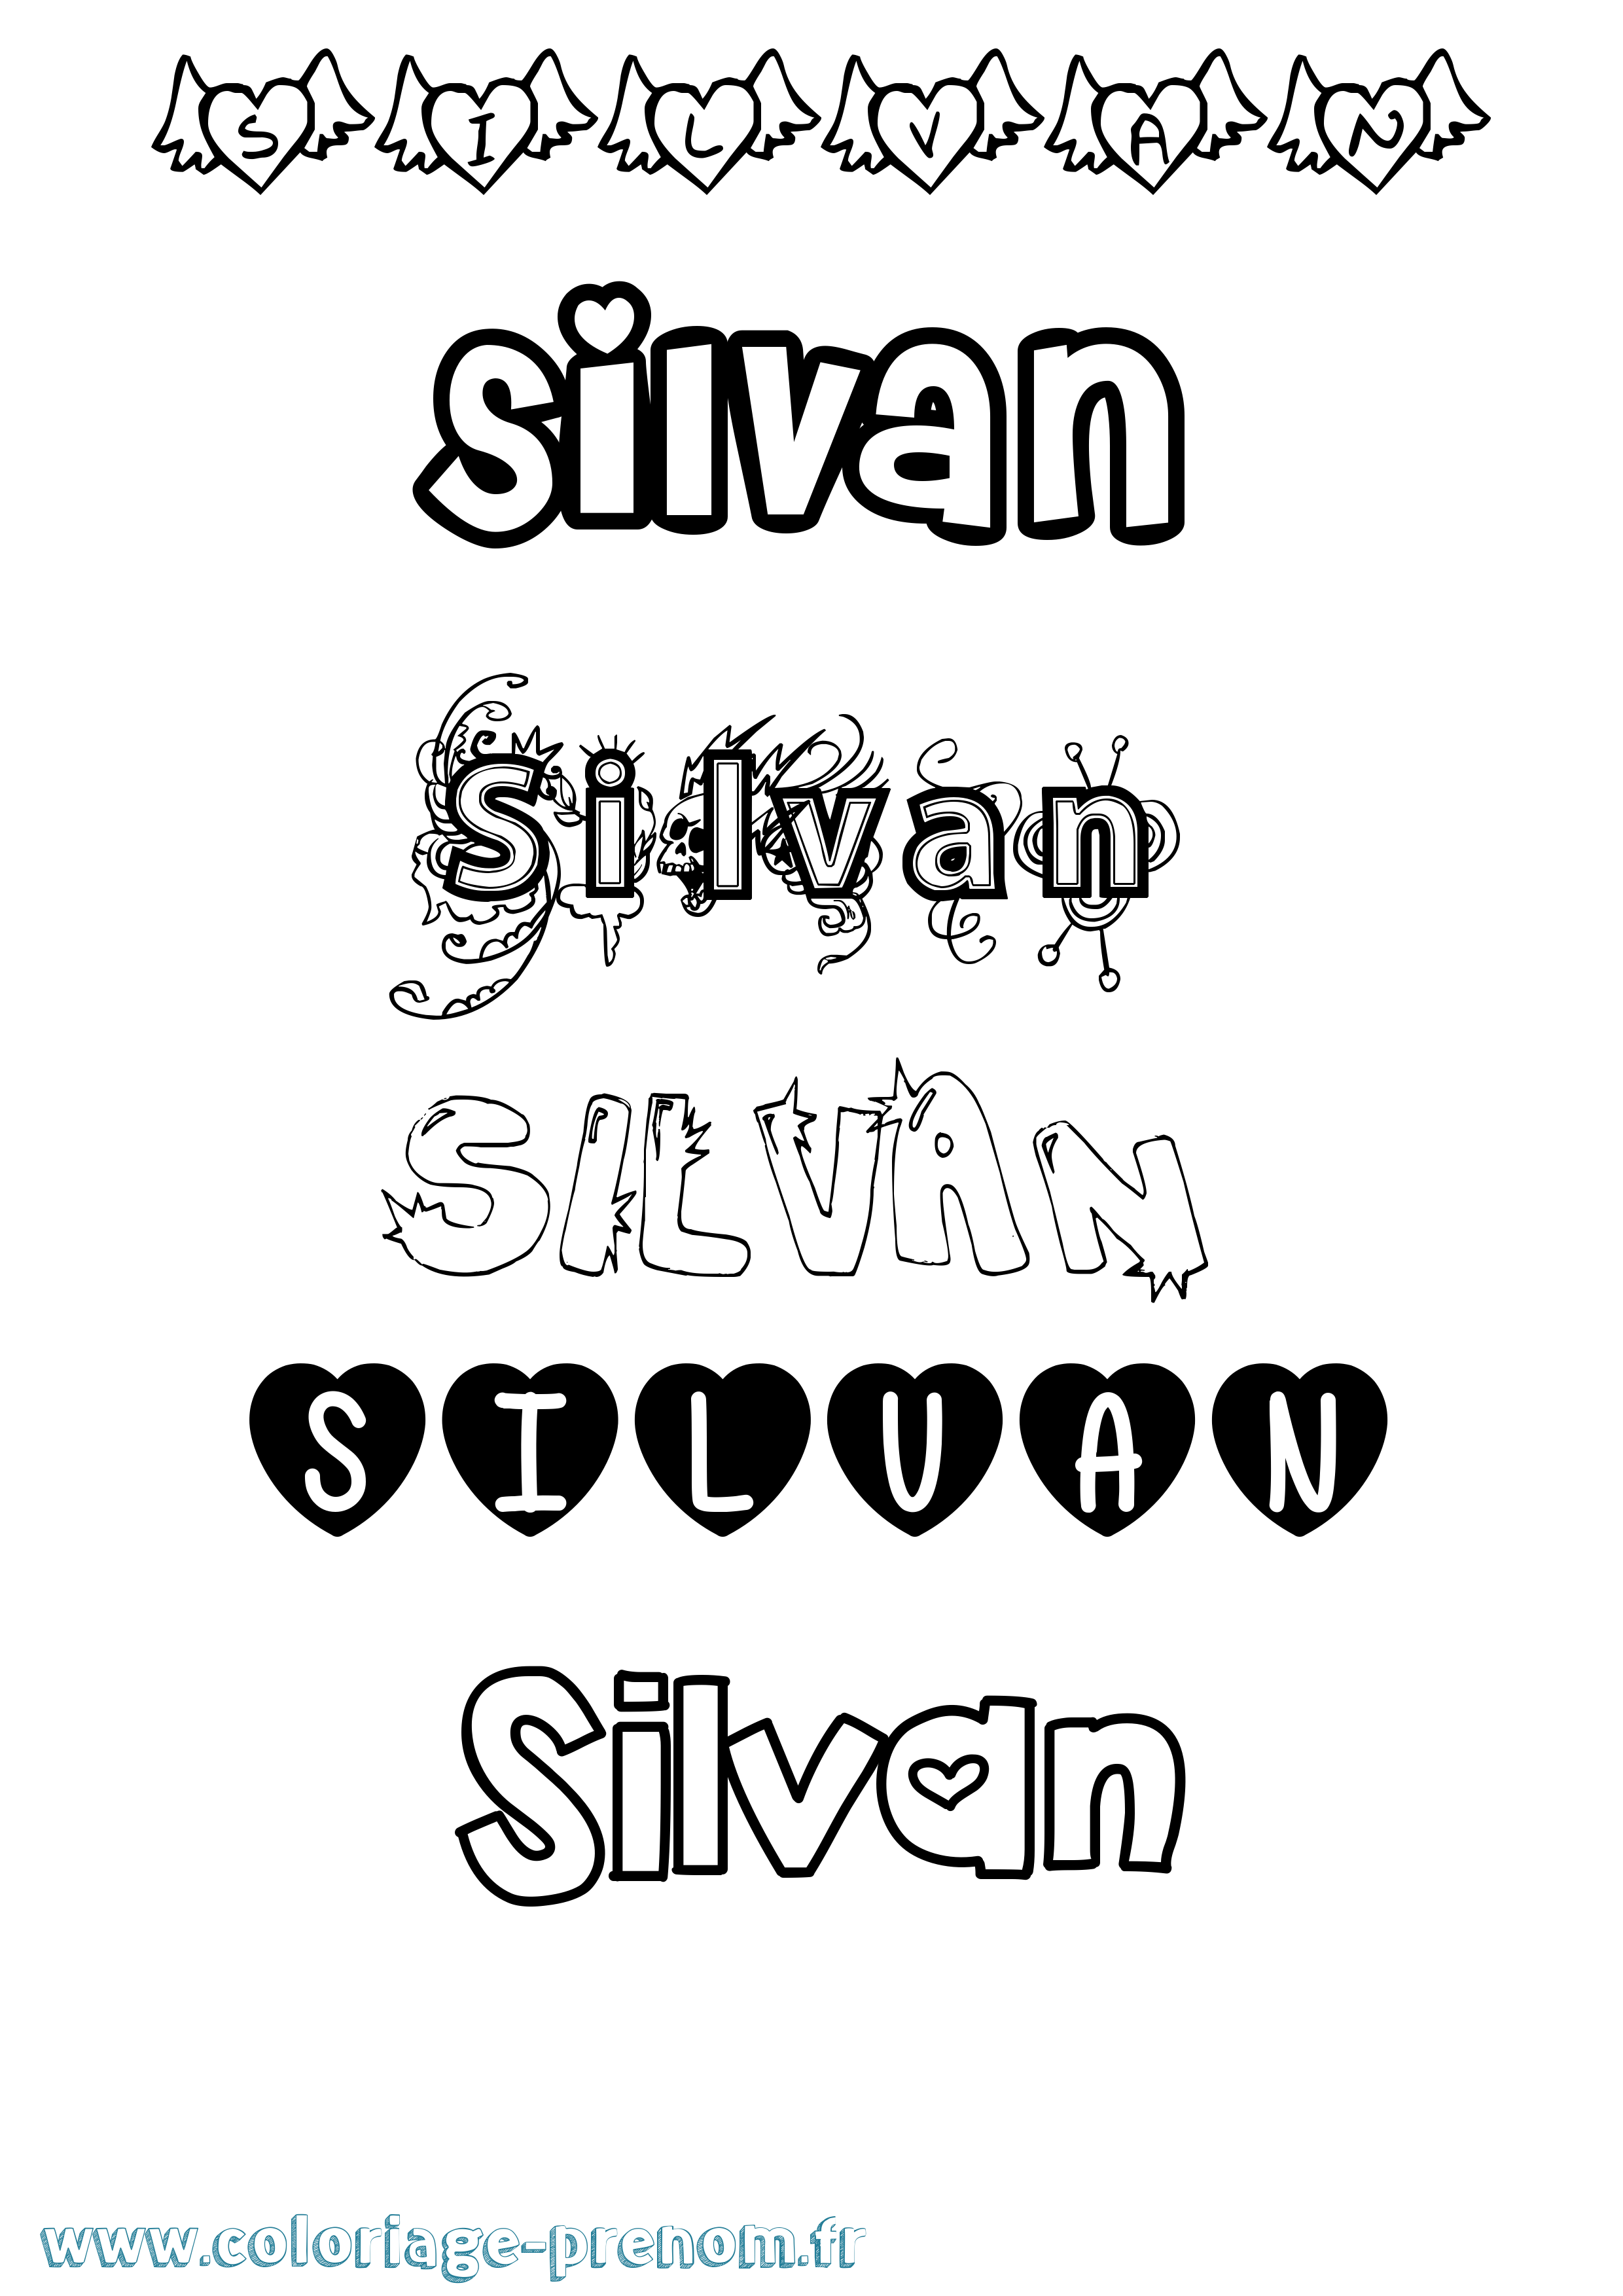 Coloriage prénom Silvan Girly